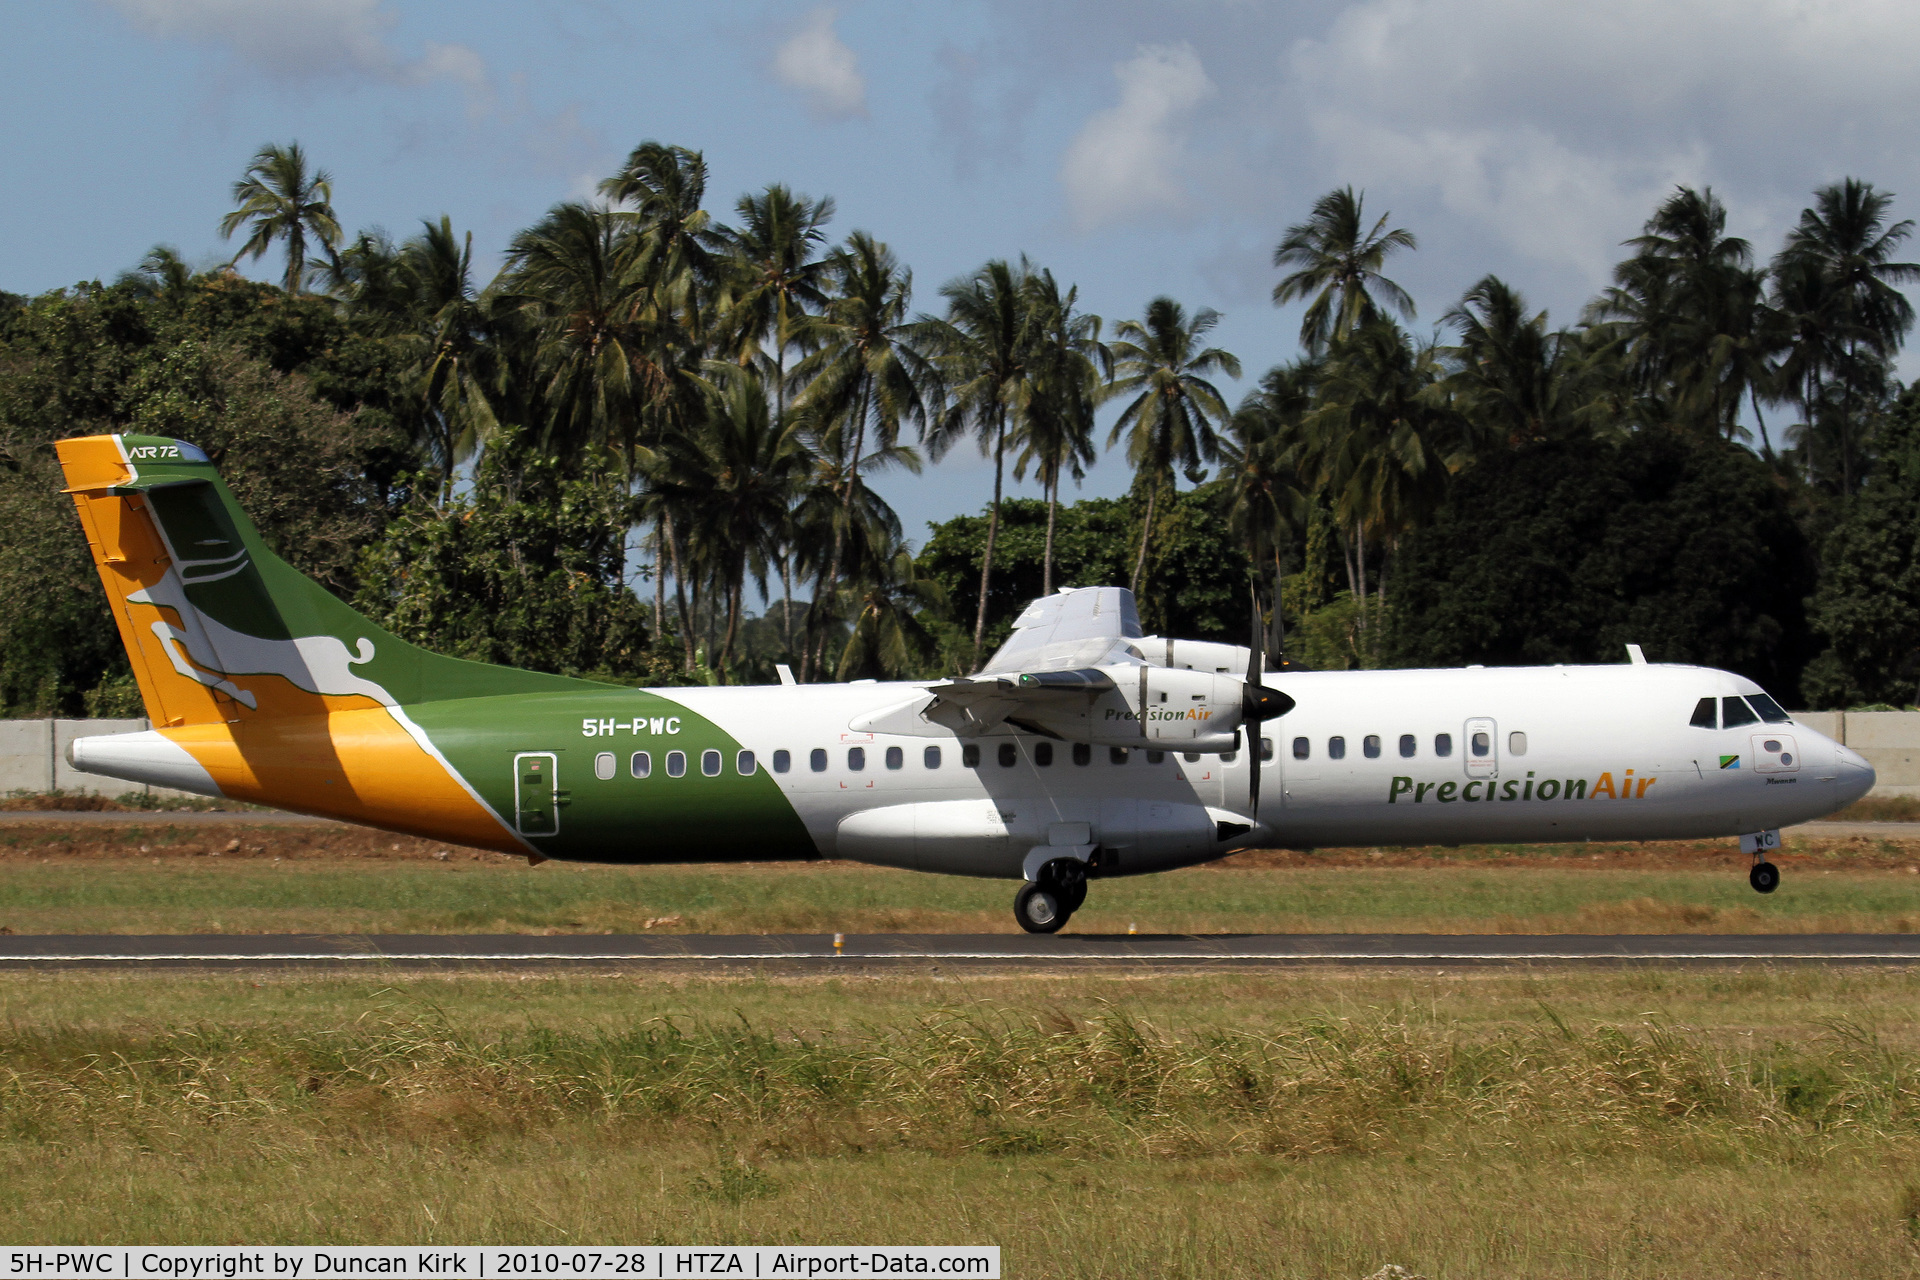 5H-PWC, 2009 ATR 72-212A C/N 866, Precision ATR-72 touching down at Zanzibar